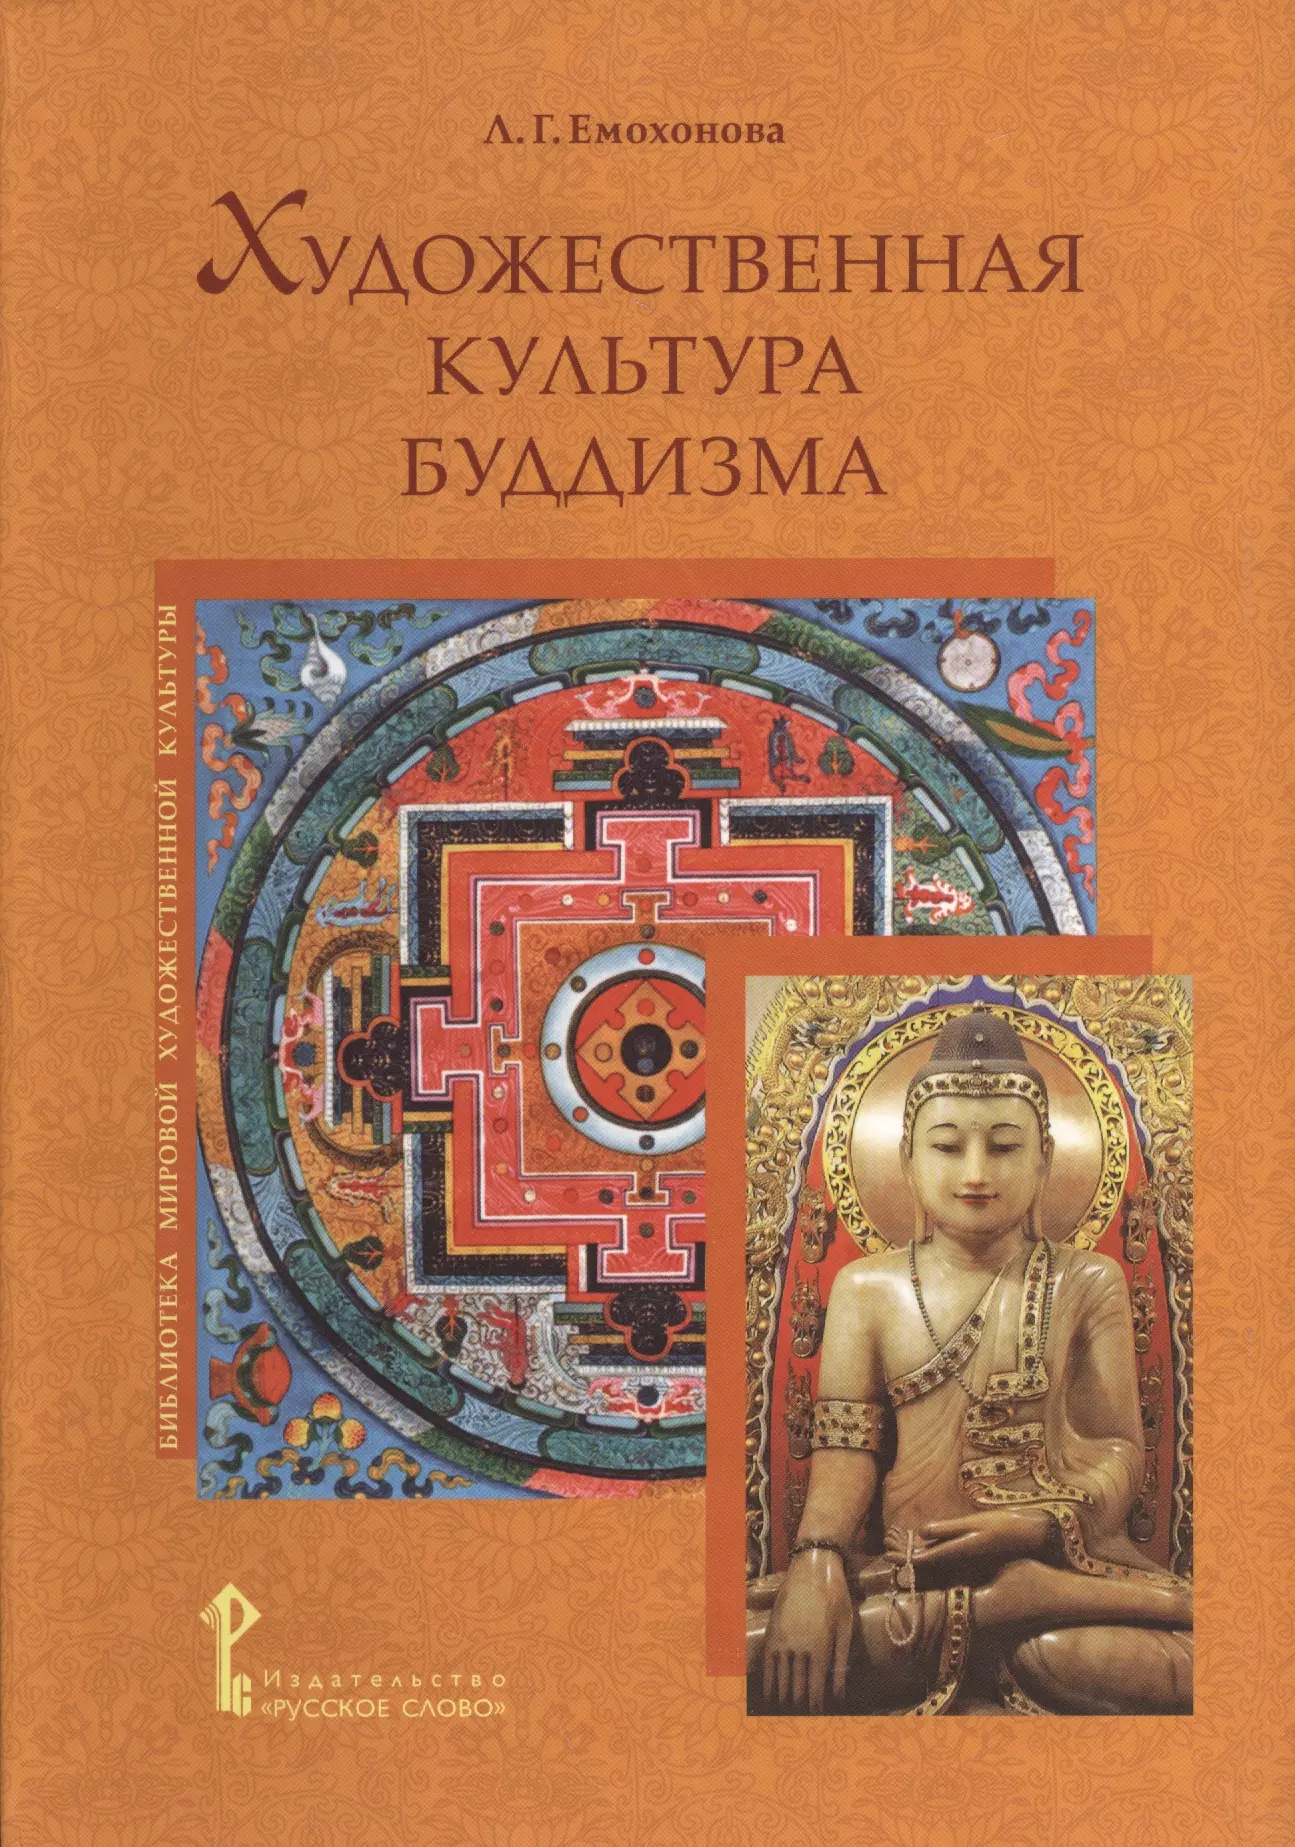 Художественная культура буддизма. Искусство в буддийской культуре. Книга буддизма. Искусство буддизма книга.